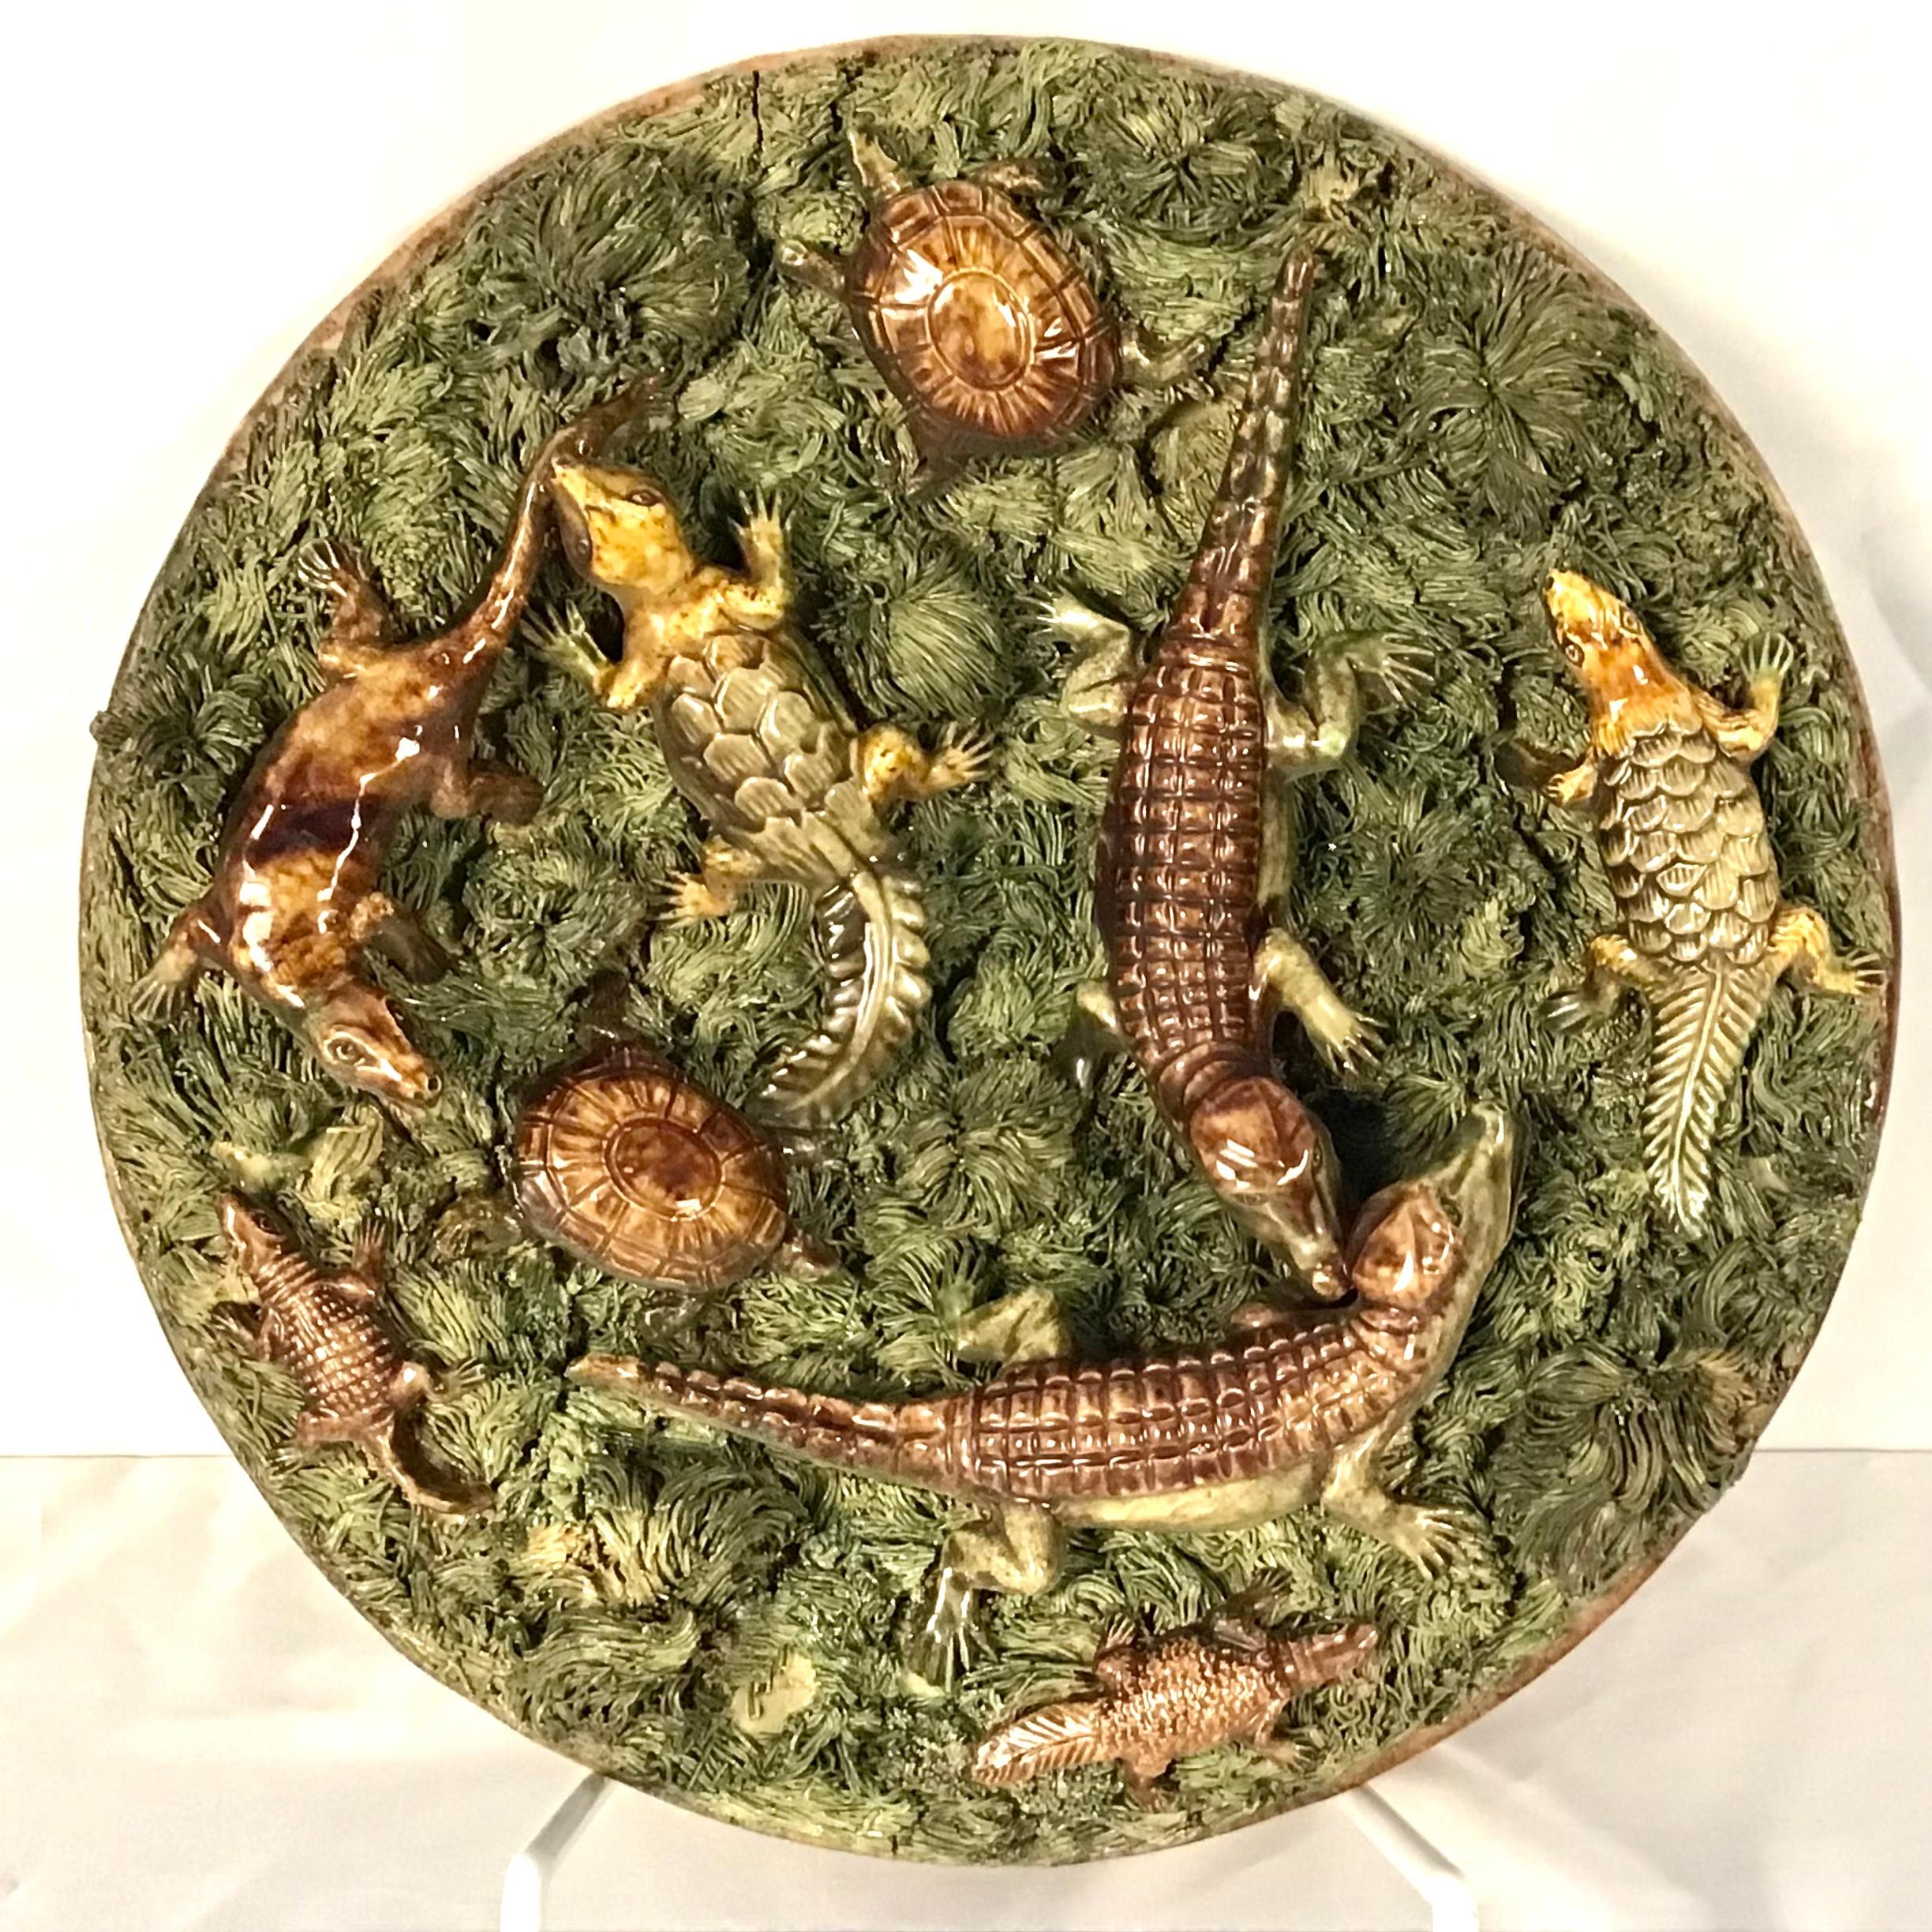 assiette Palissy portugaise du 19e siècle avec de grands alligators, lézards et tortues cherchant dans une touffe de mousse. Marque indéchiffrable, probablement Mafra, Caldas.